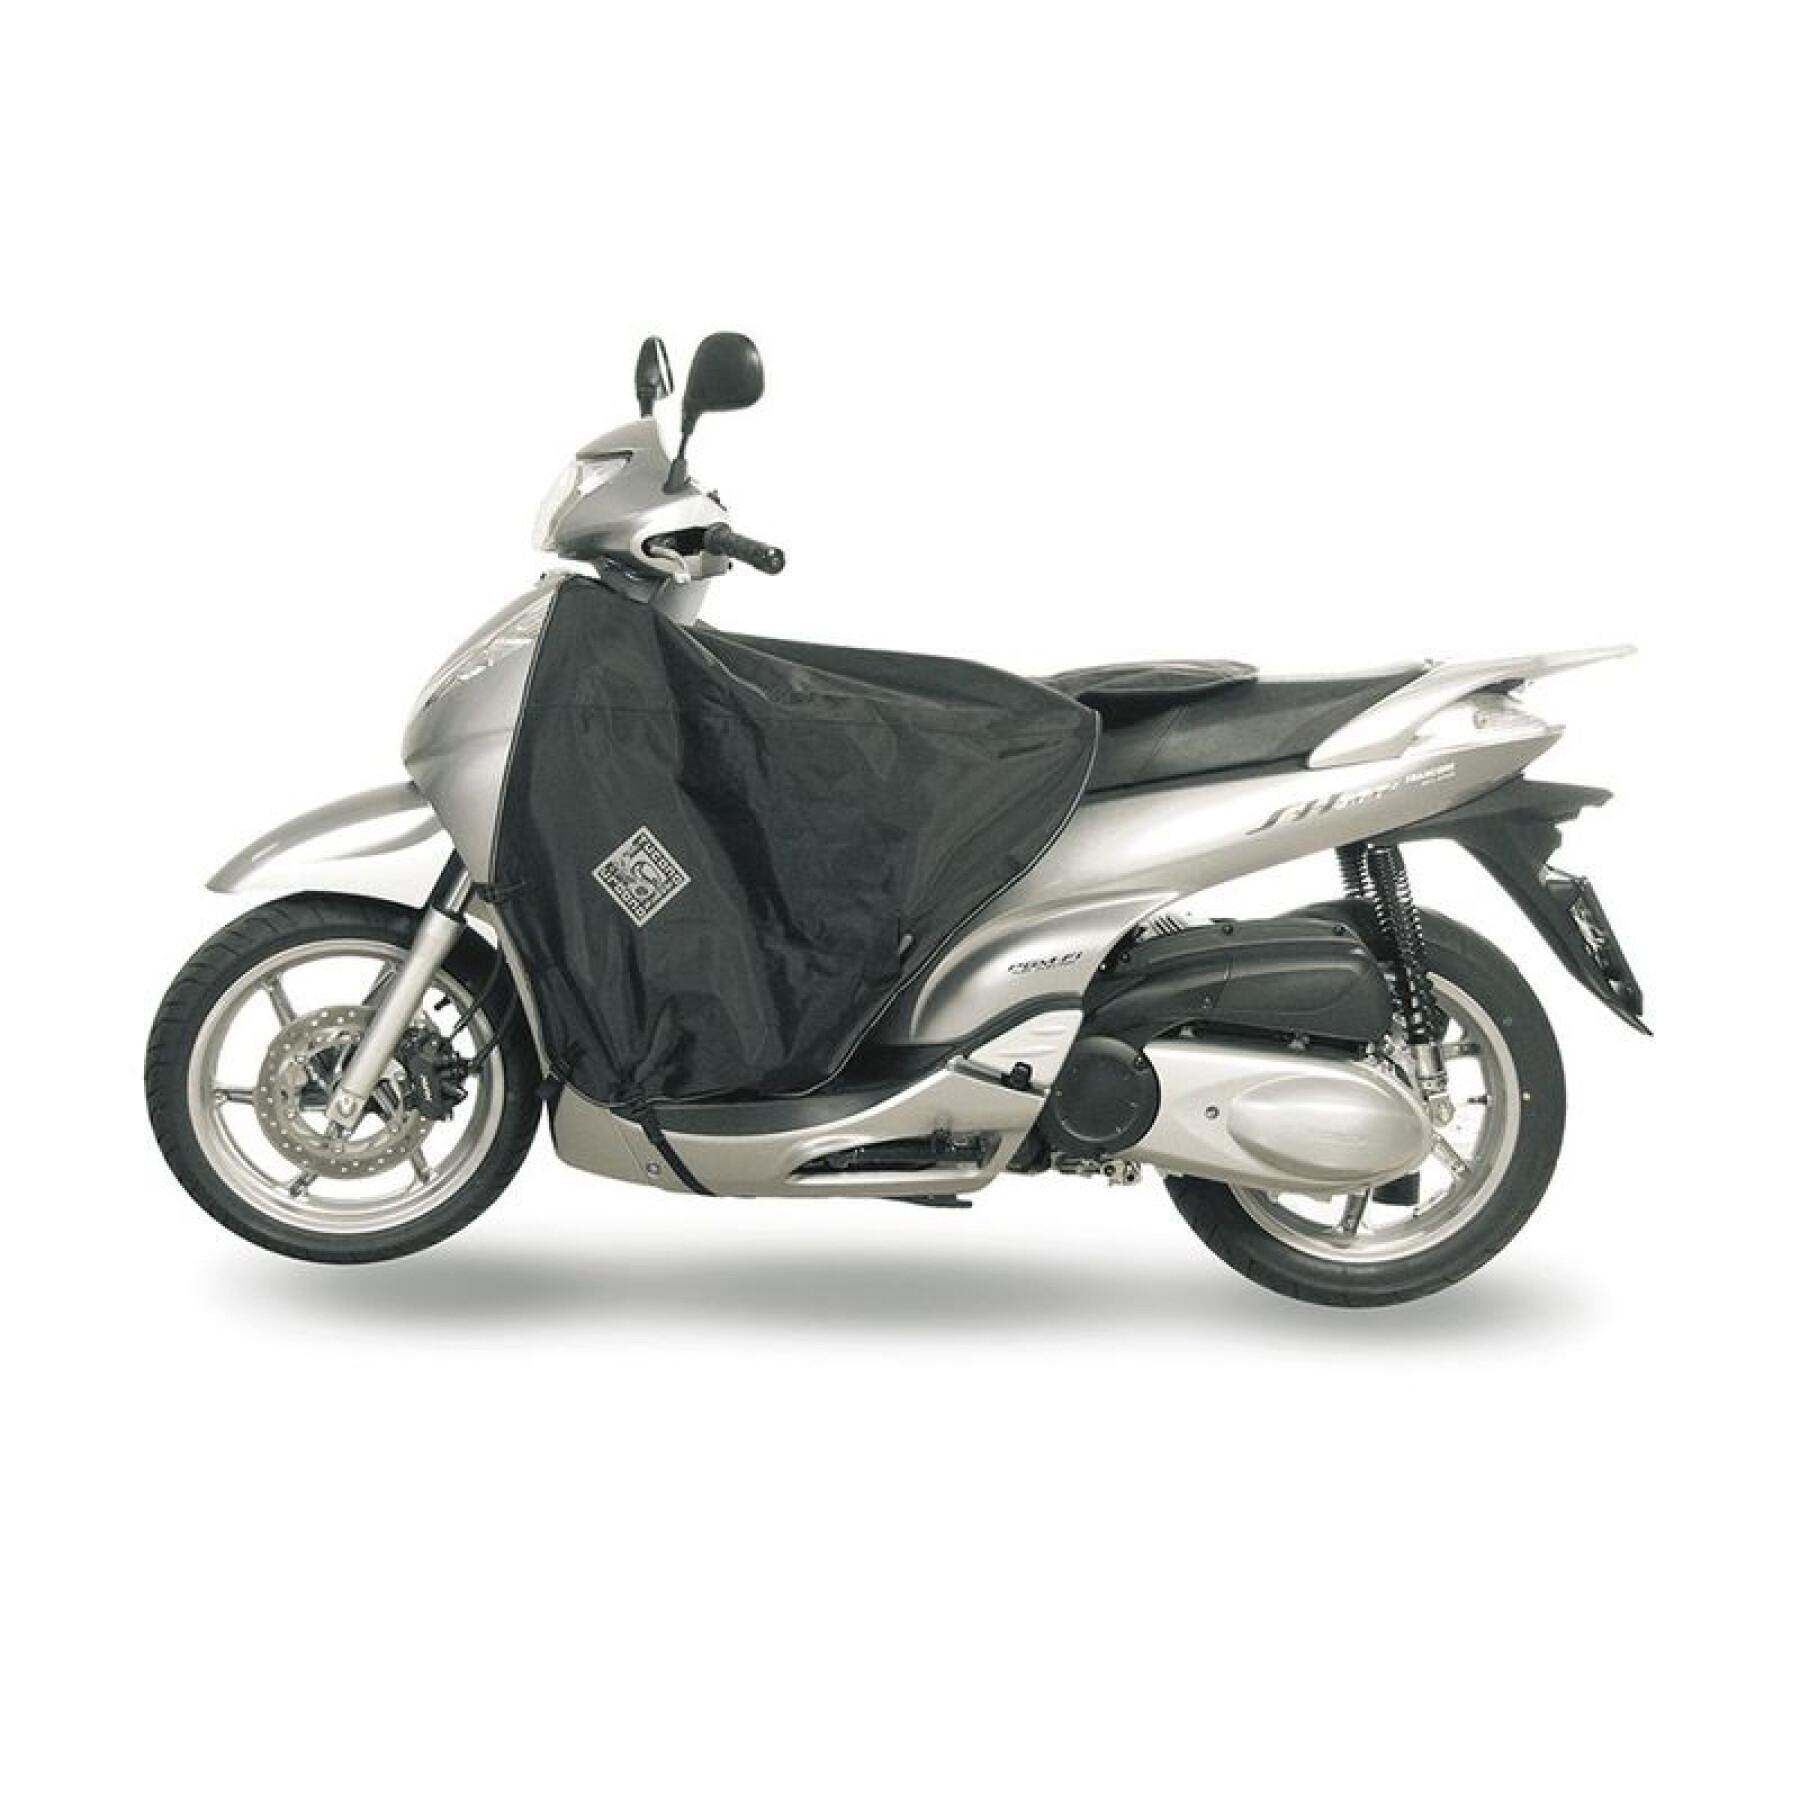 Cubrepiernas para scooter Tucano Urbano Termoscud Honda Sh 300 (jusqu'en 2010)